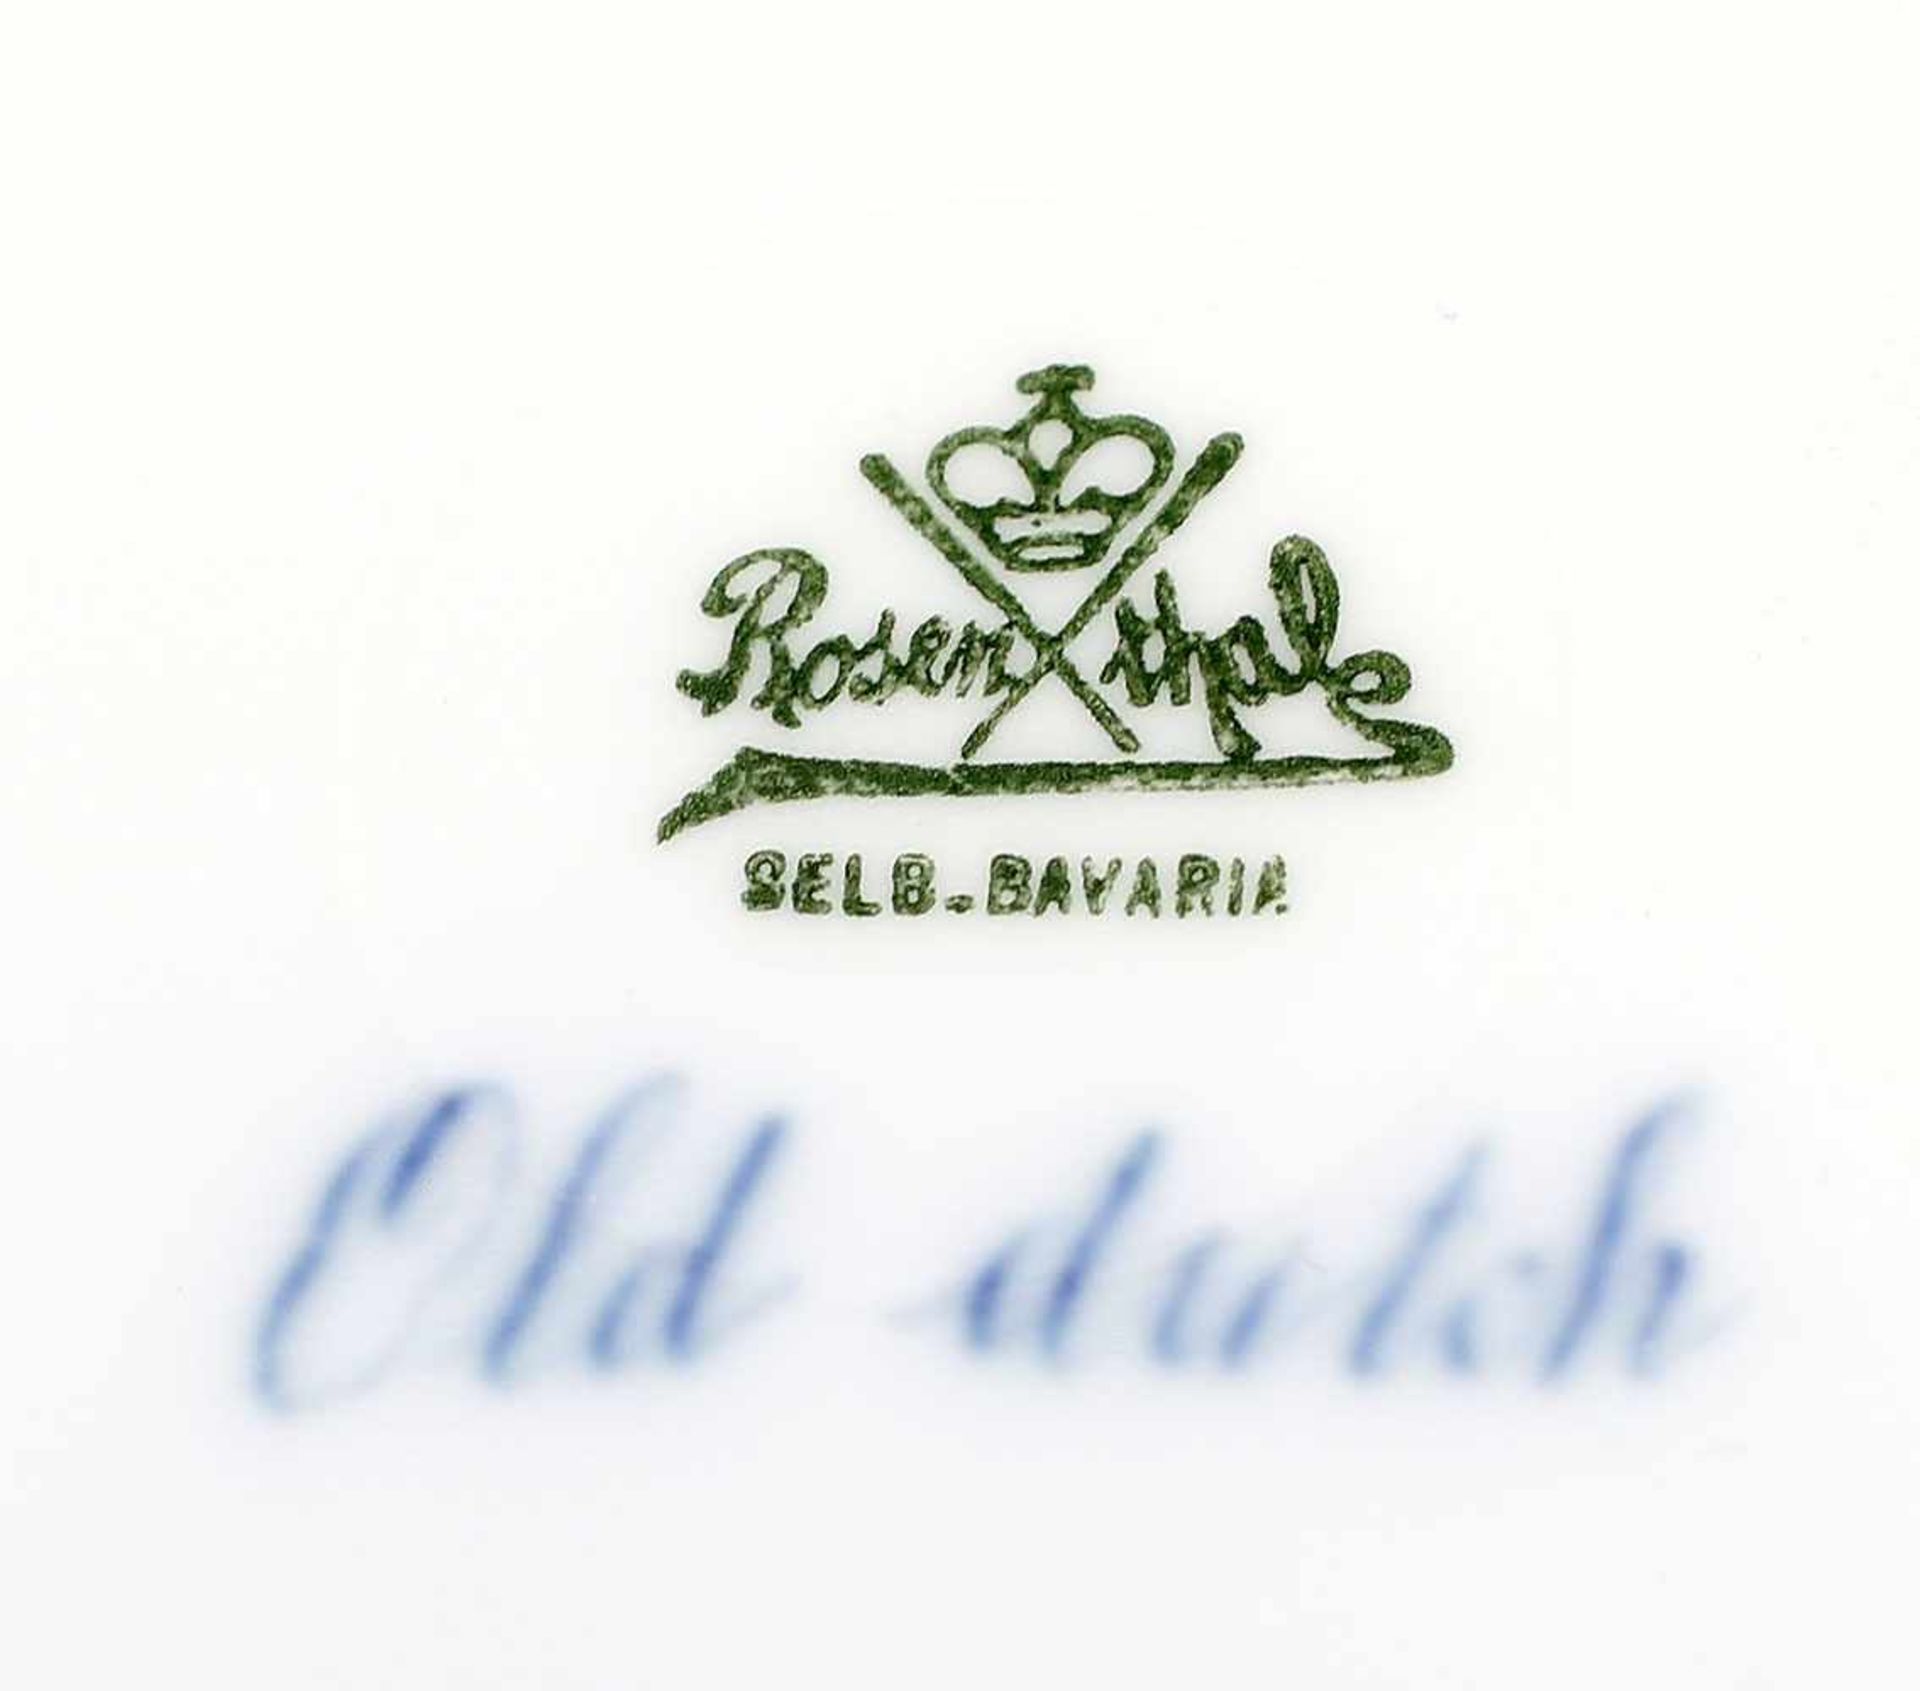 Paar Teller Old-Dutch Rosenthal.. gemarkt grüne Stempelmarke Rosenthal, Selb, Bavaria, sowie - Bild 2 aus 2